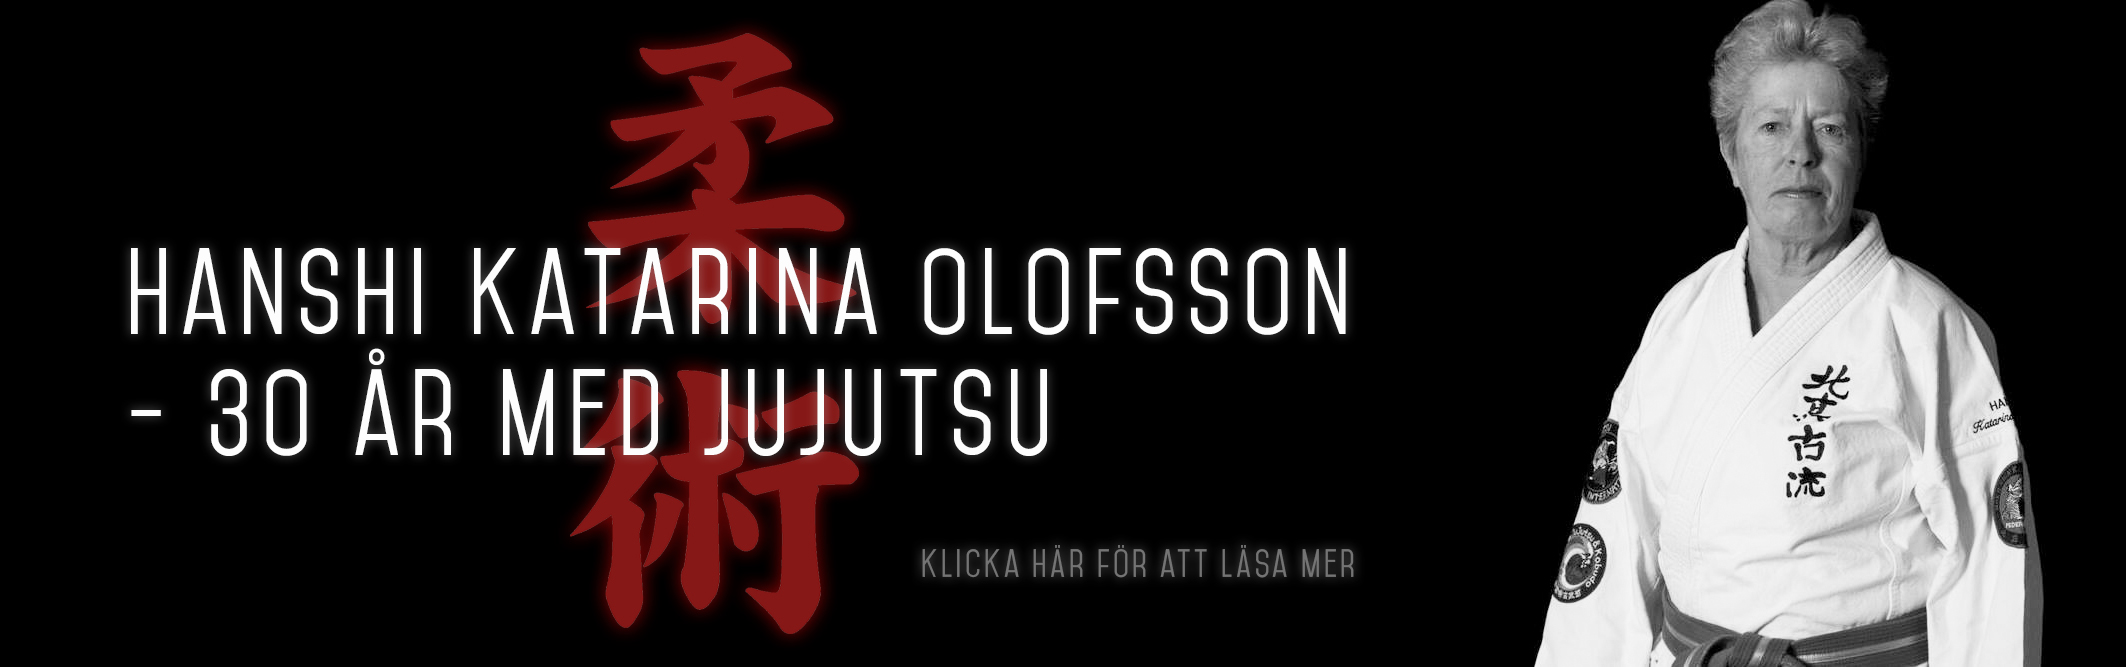 Hanshi Katarina Olofsson